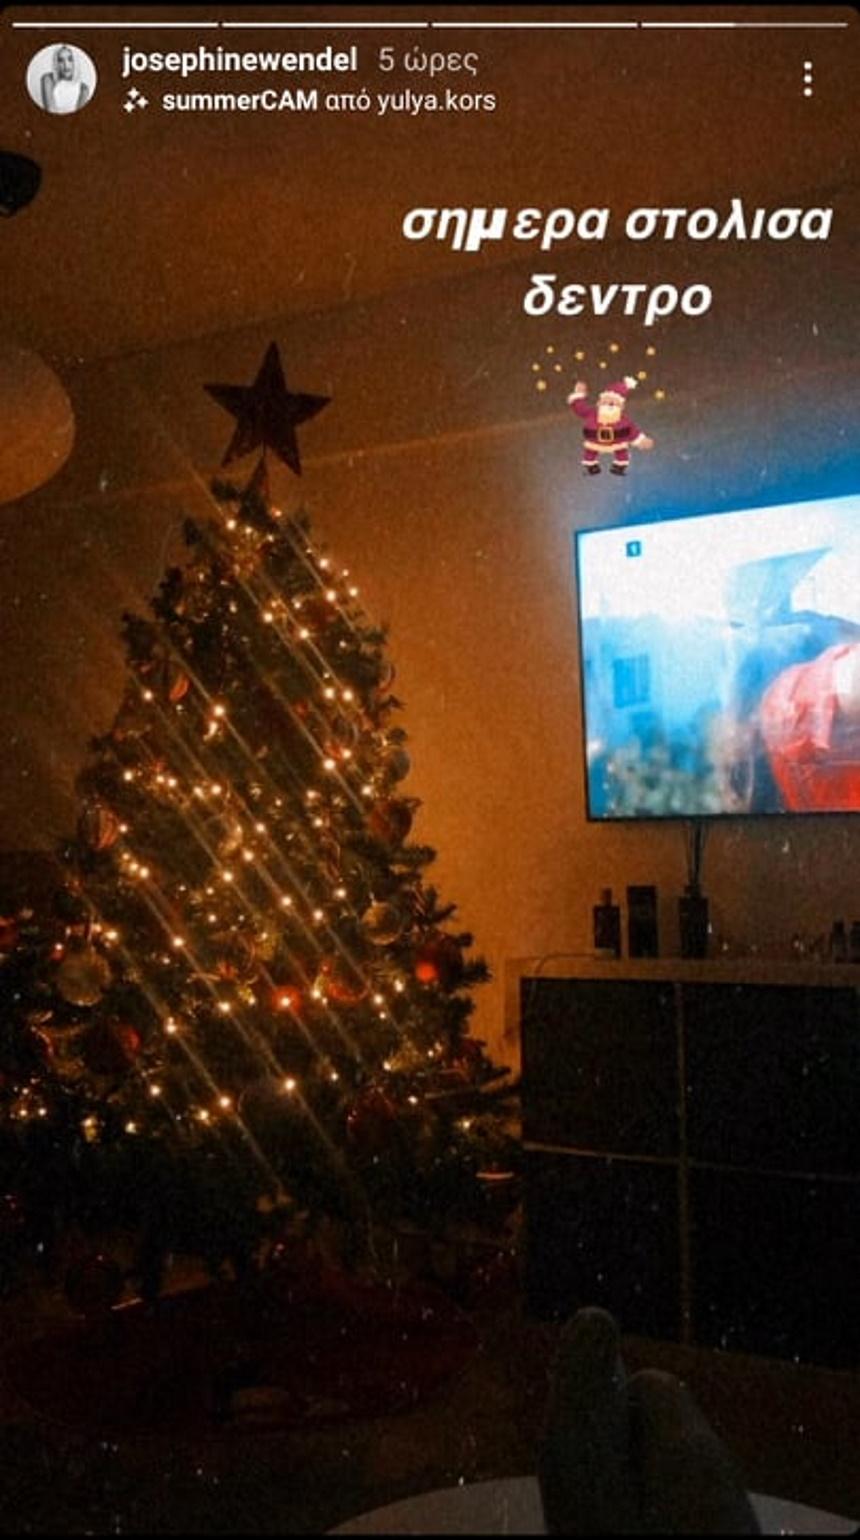 Έλληνες celebrities στολίζουν τα Χριστουγεννιάτικα δέντρα τους